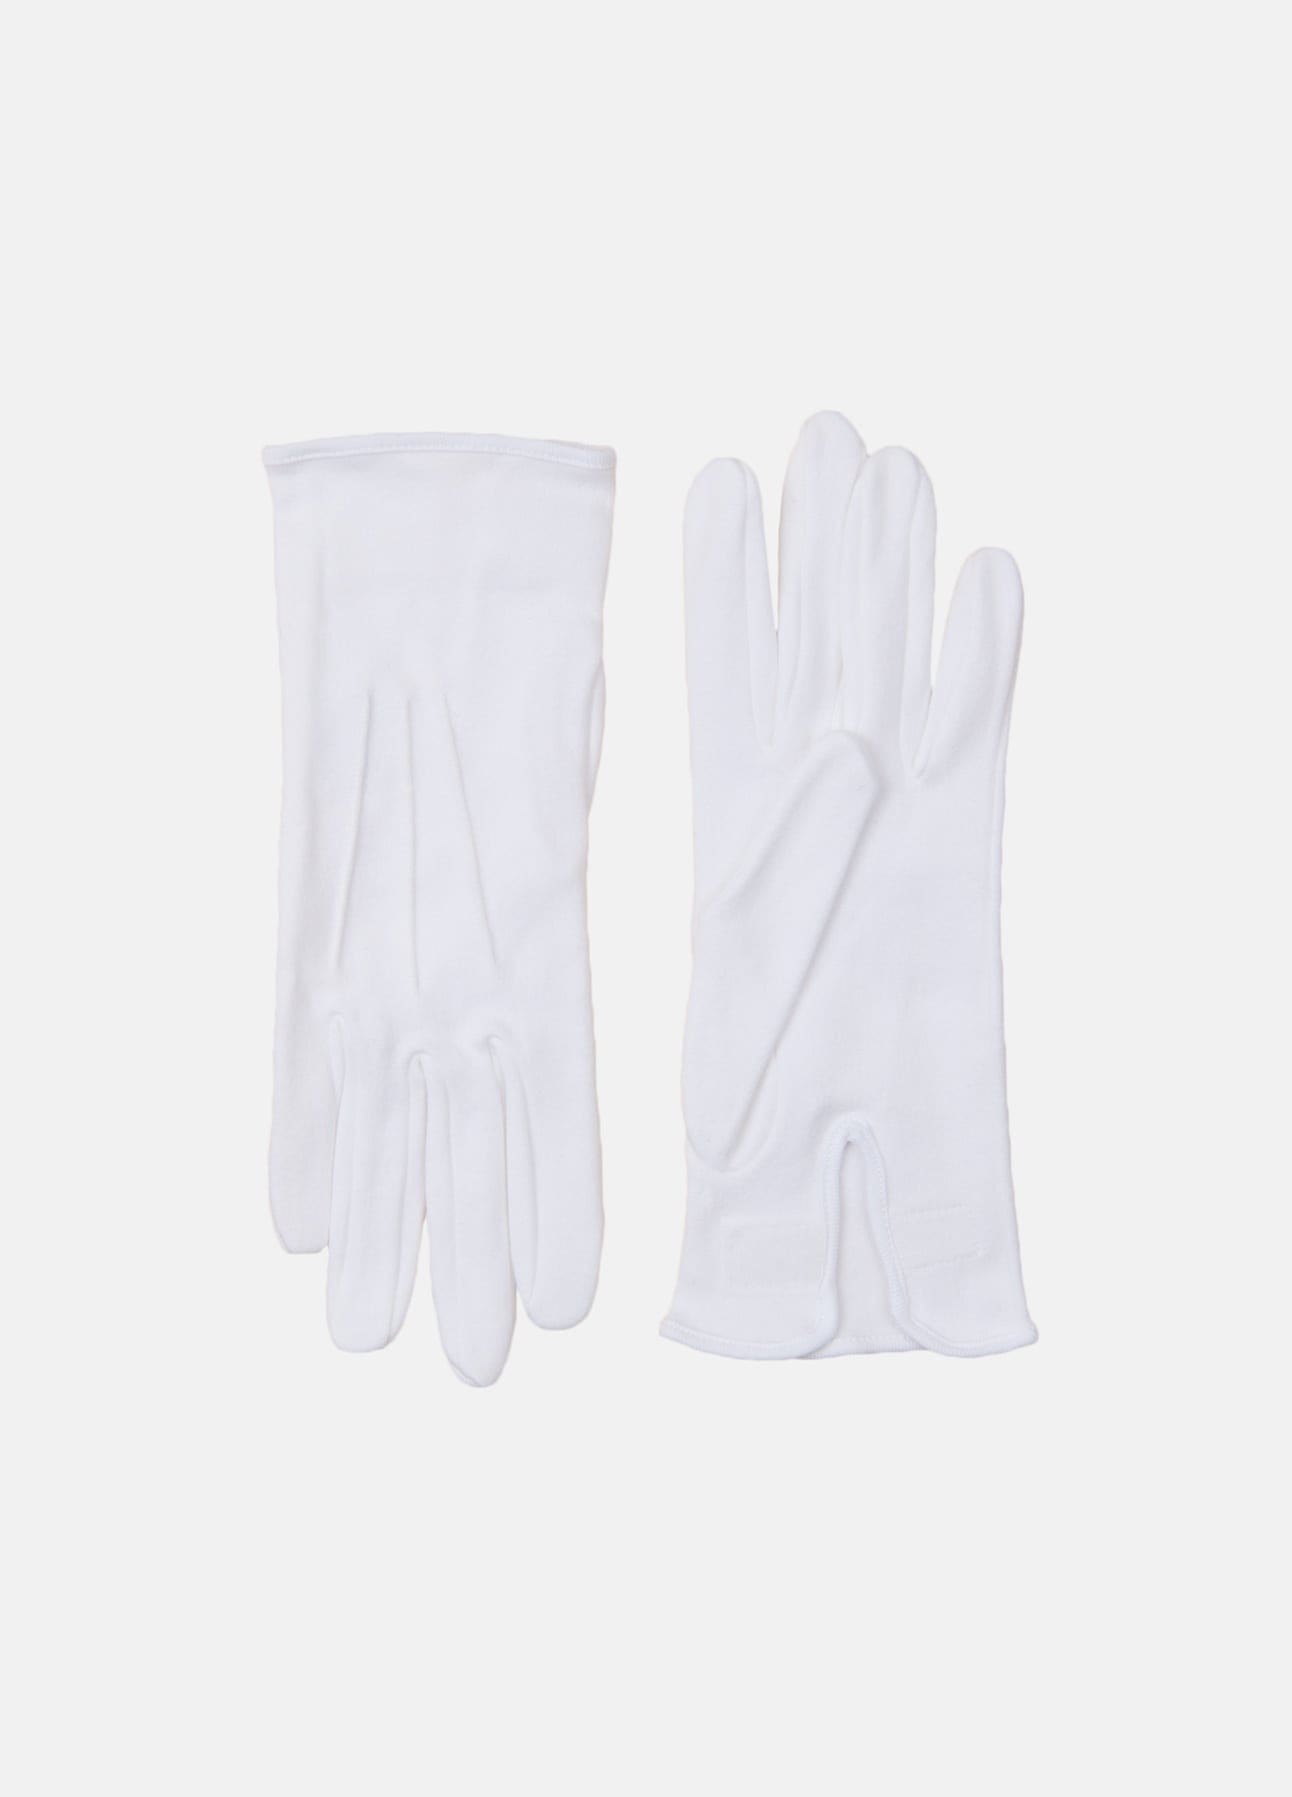 Orphan Koge Forsvinde Hvide handsker fra Troelstrup | Køb online hos troelstrup.com